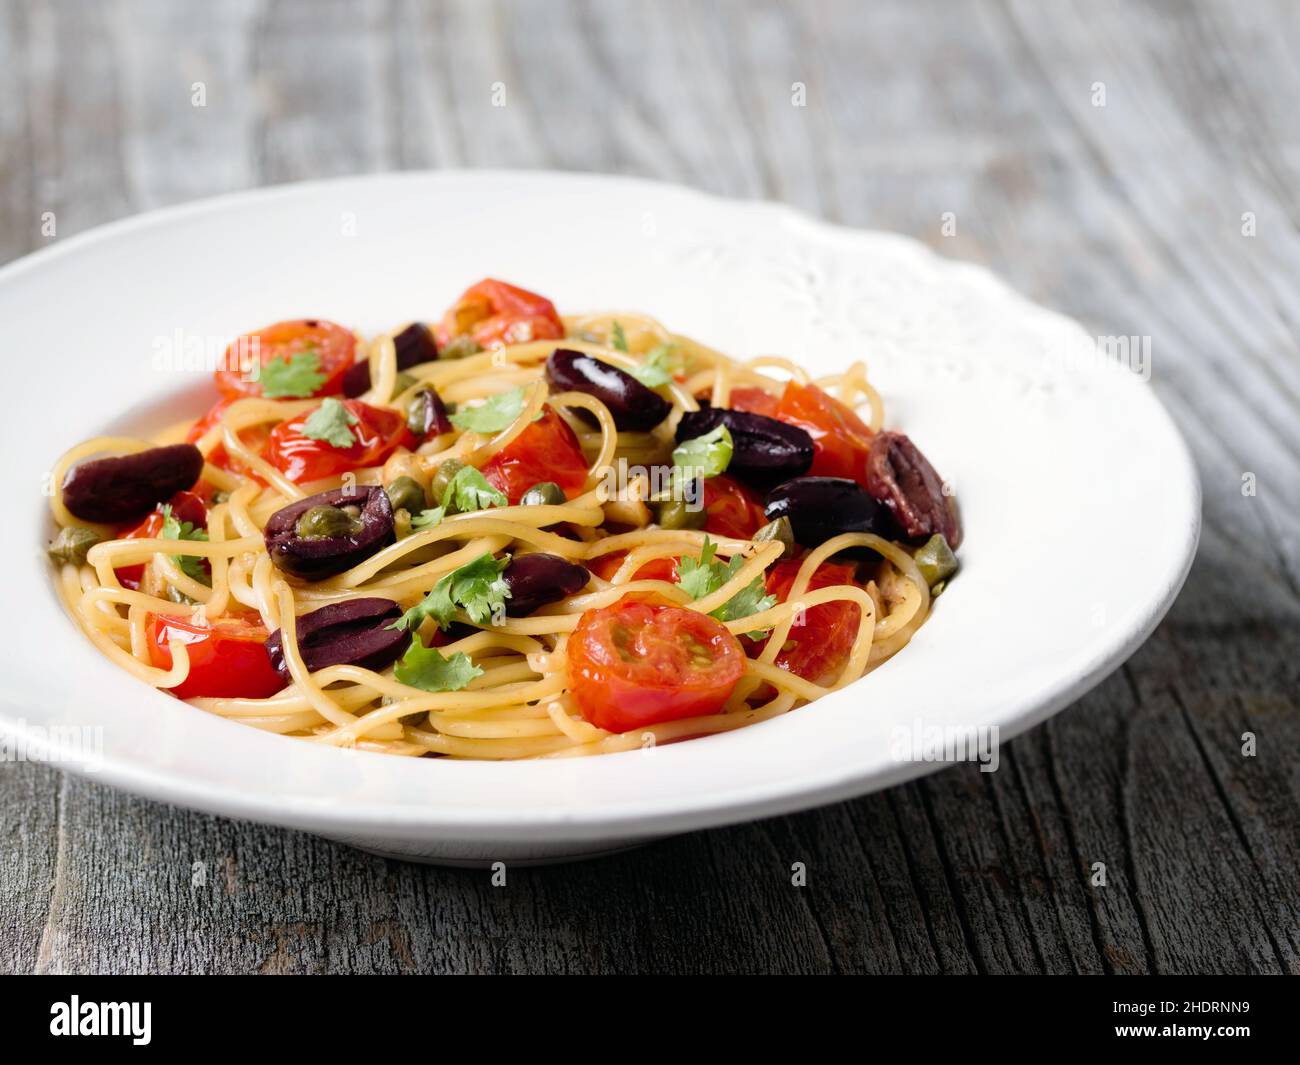 pasta, spaghetti alla puttanesca, noddles, pastas Stock Photo